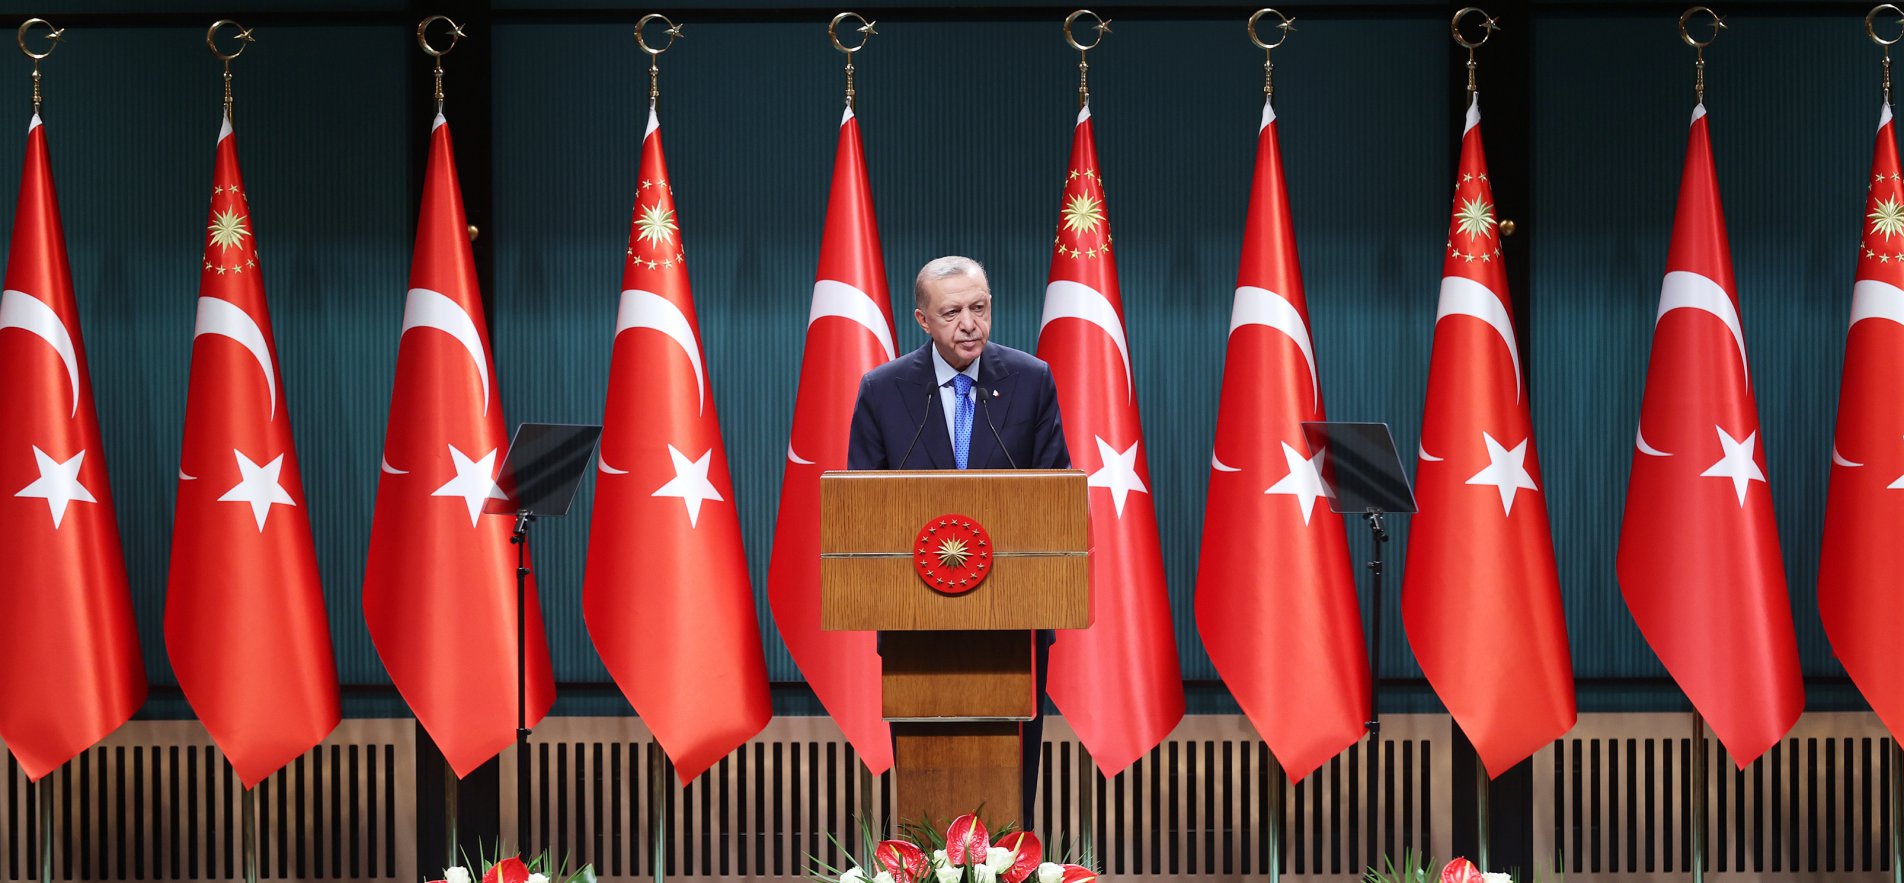 Kabineden Çıkacak 4 Müjde! Cumhurbaşkanı Erdoğan Açıklayacak! Evlilik Kedisi, Ev Hanımlarına Emeklilik, Erken Emeklilik